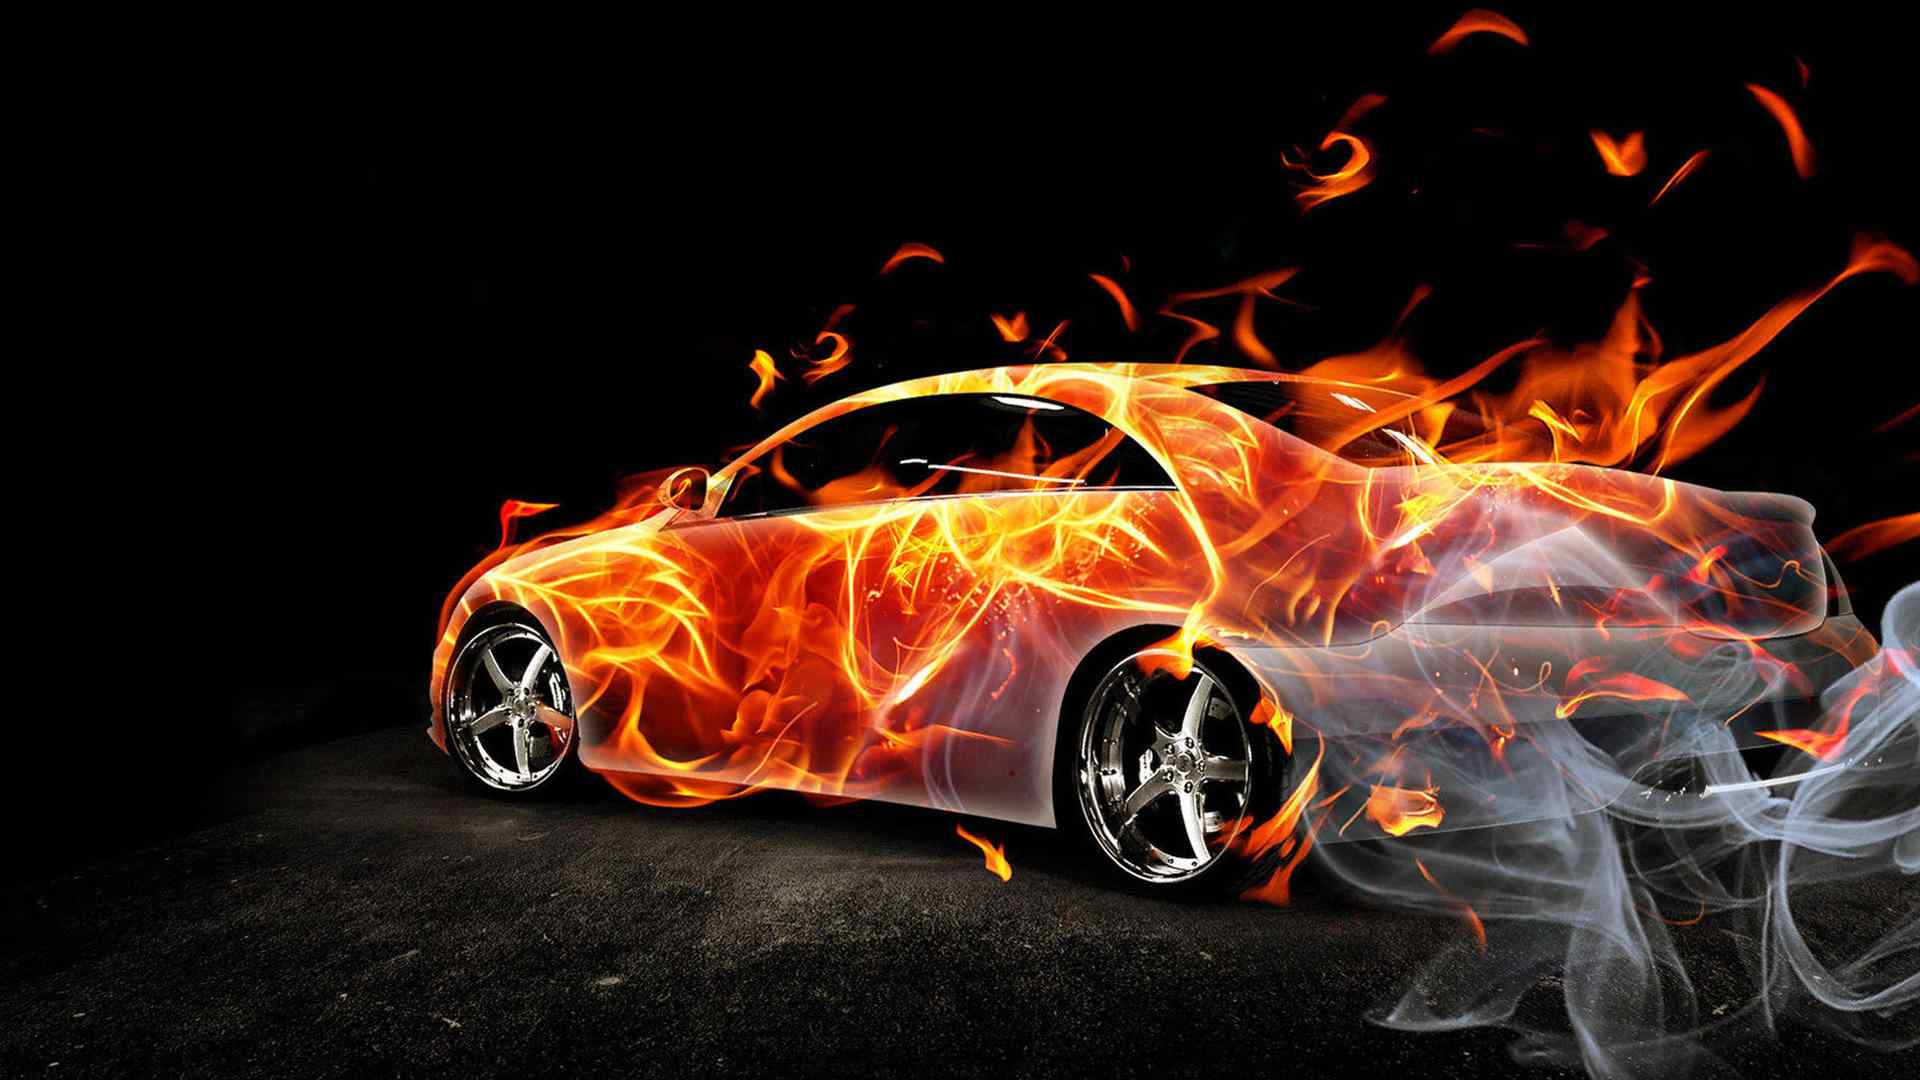 超酷的烈焰跑车霸气高清图片桌面壁纸